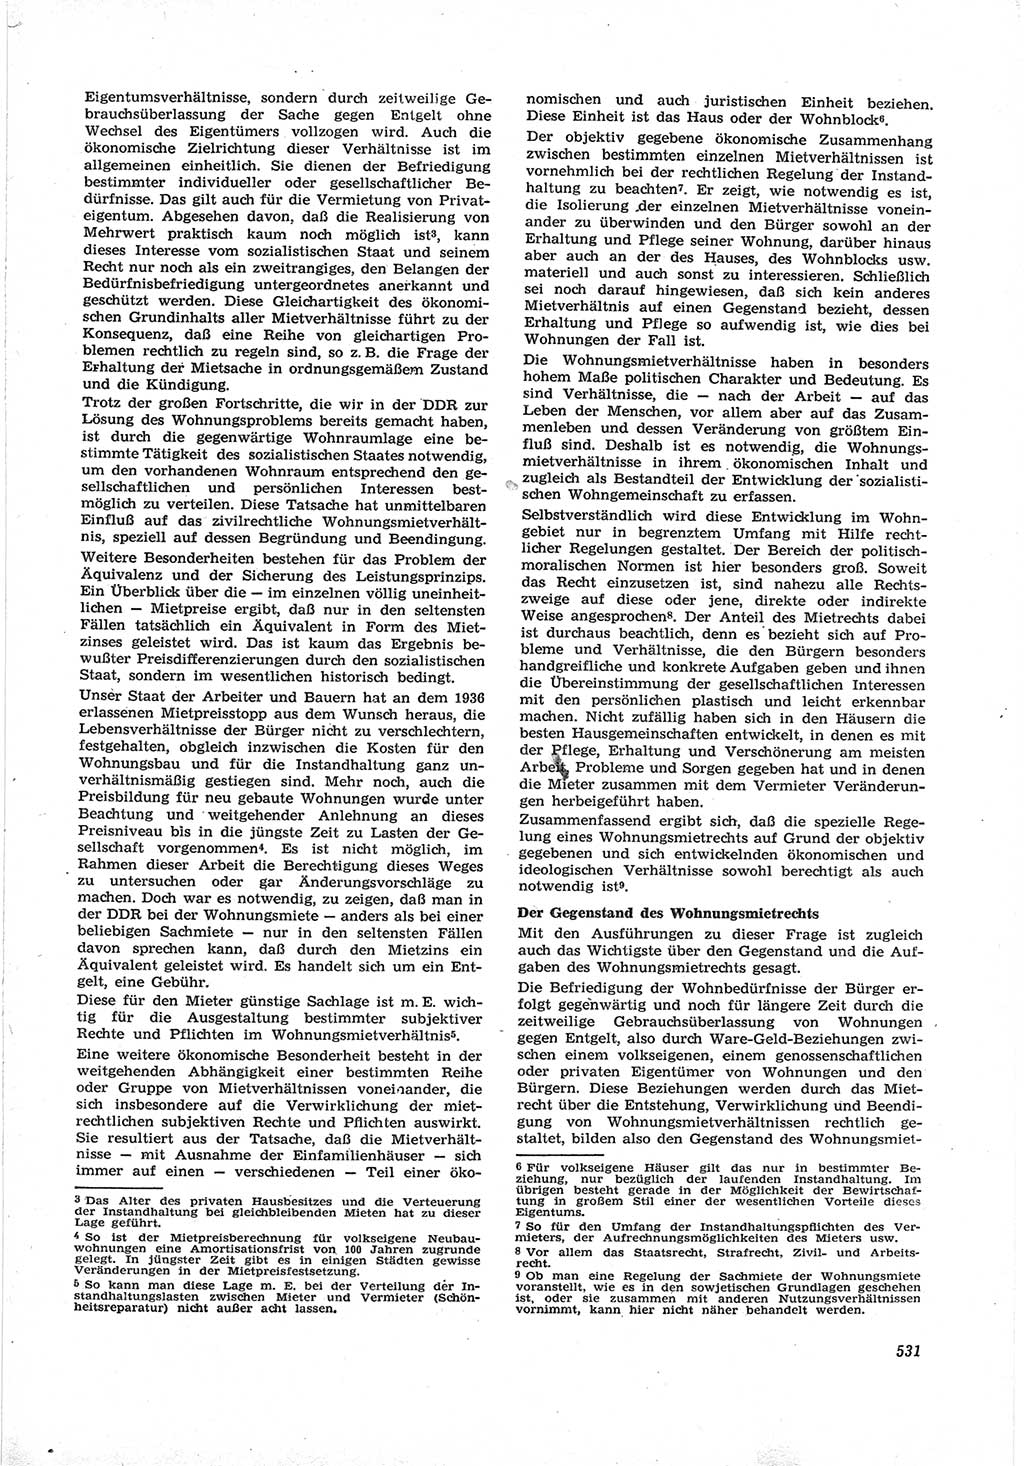 Neue Justiz (NJ), Zeitschrift für Recht und Rechtswissenschaft [Deutsche Demokratische Republik (DDR)], 17. Jahrgang 1963, Seite 531 (NJ DDR 1963, S. 531)